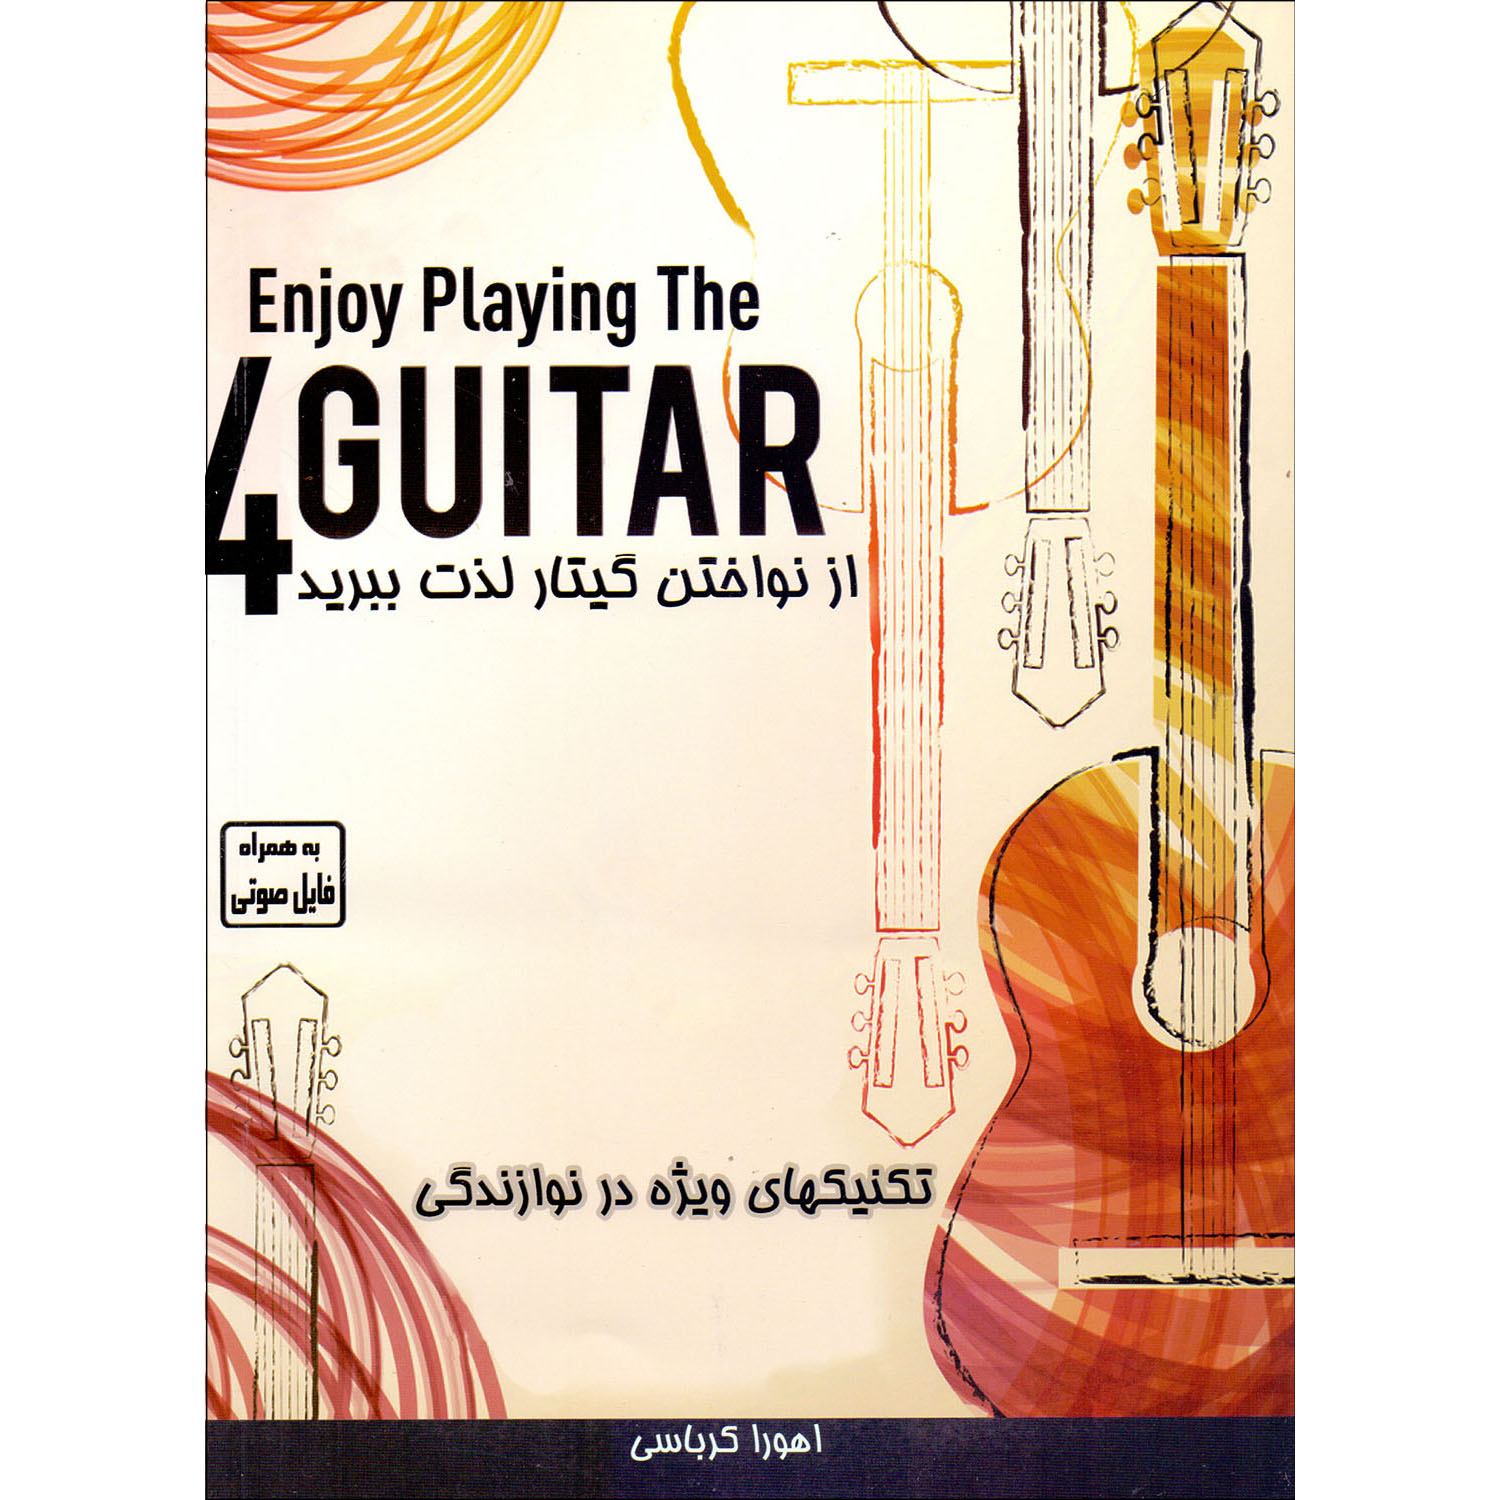 کتاب از نواختن گیتار لذت ببرید اثر اهورا کرباسی نشر کرباسی جلد 4